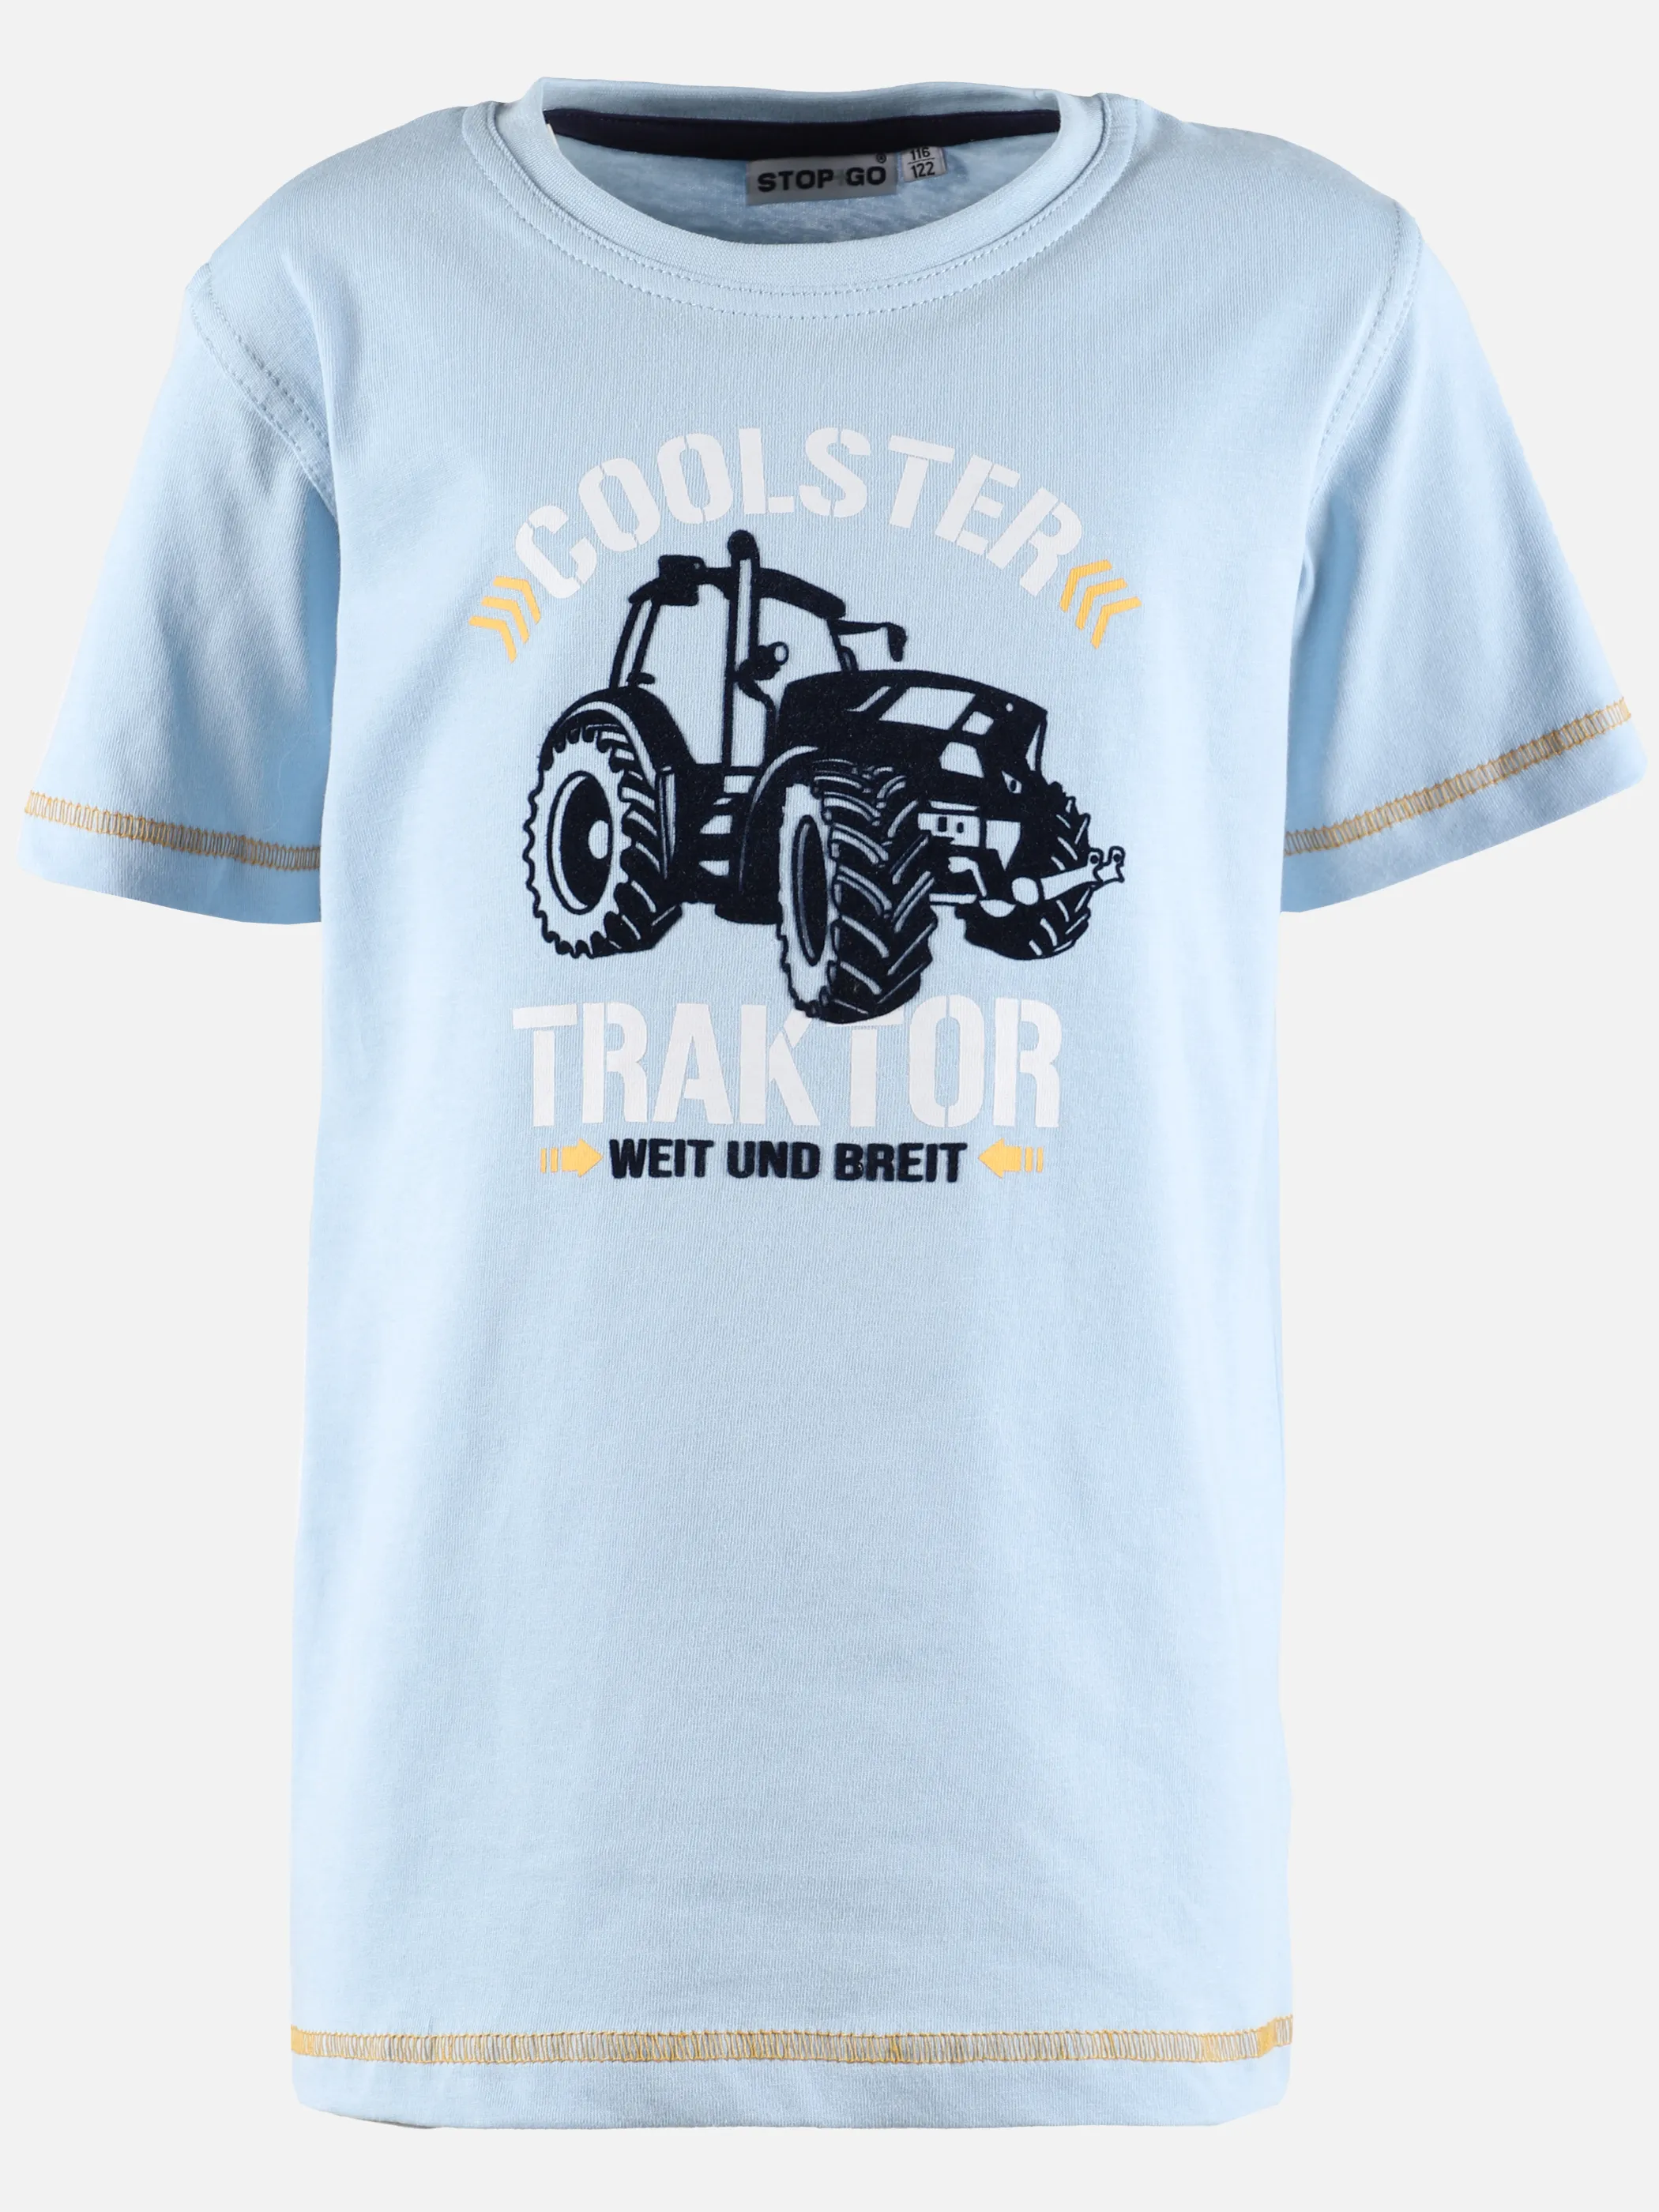 Stop + Go KJ T-Shirt mit Traktor Frontdruck in hellblau Blau 890313 HELLBLAU 1